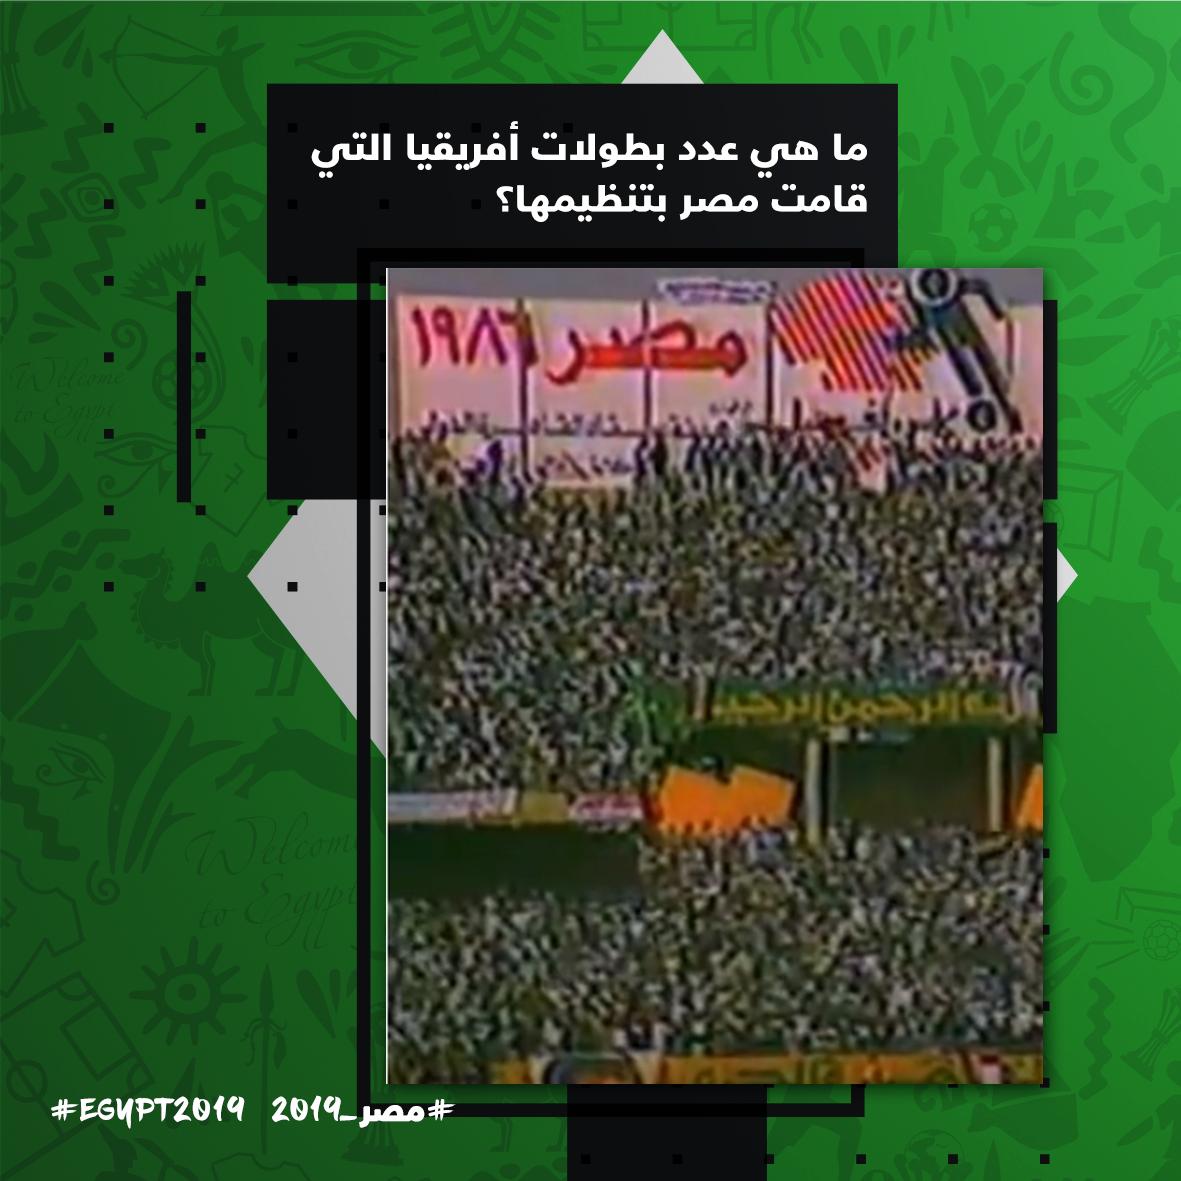 الأكثر تنظيما للبطولة كم مرة استضافت مصر كأس أمم أفريقيا صور اليوم السابع